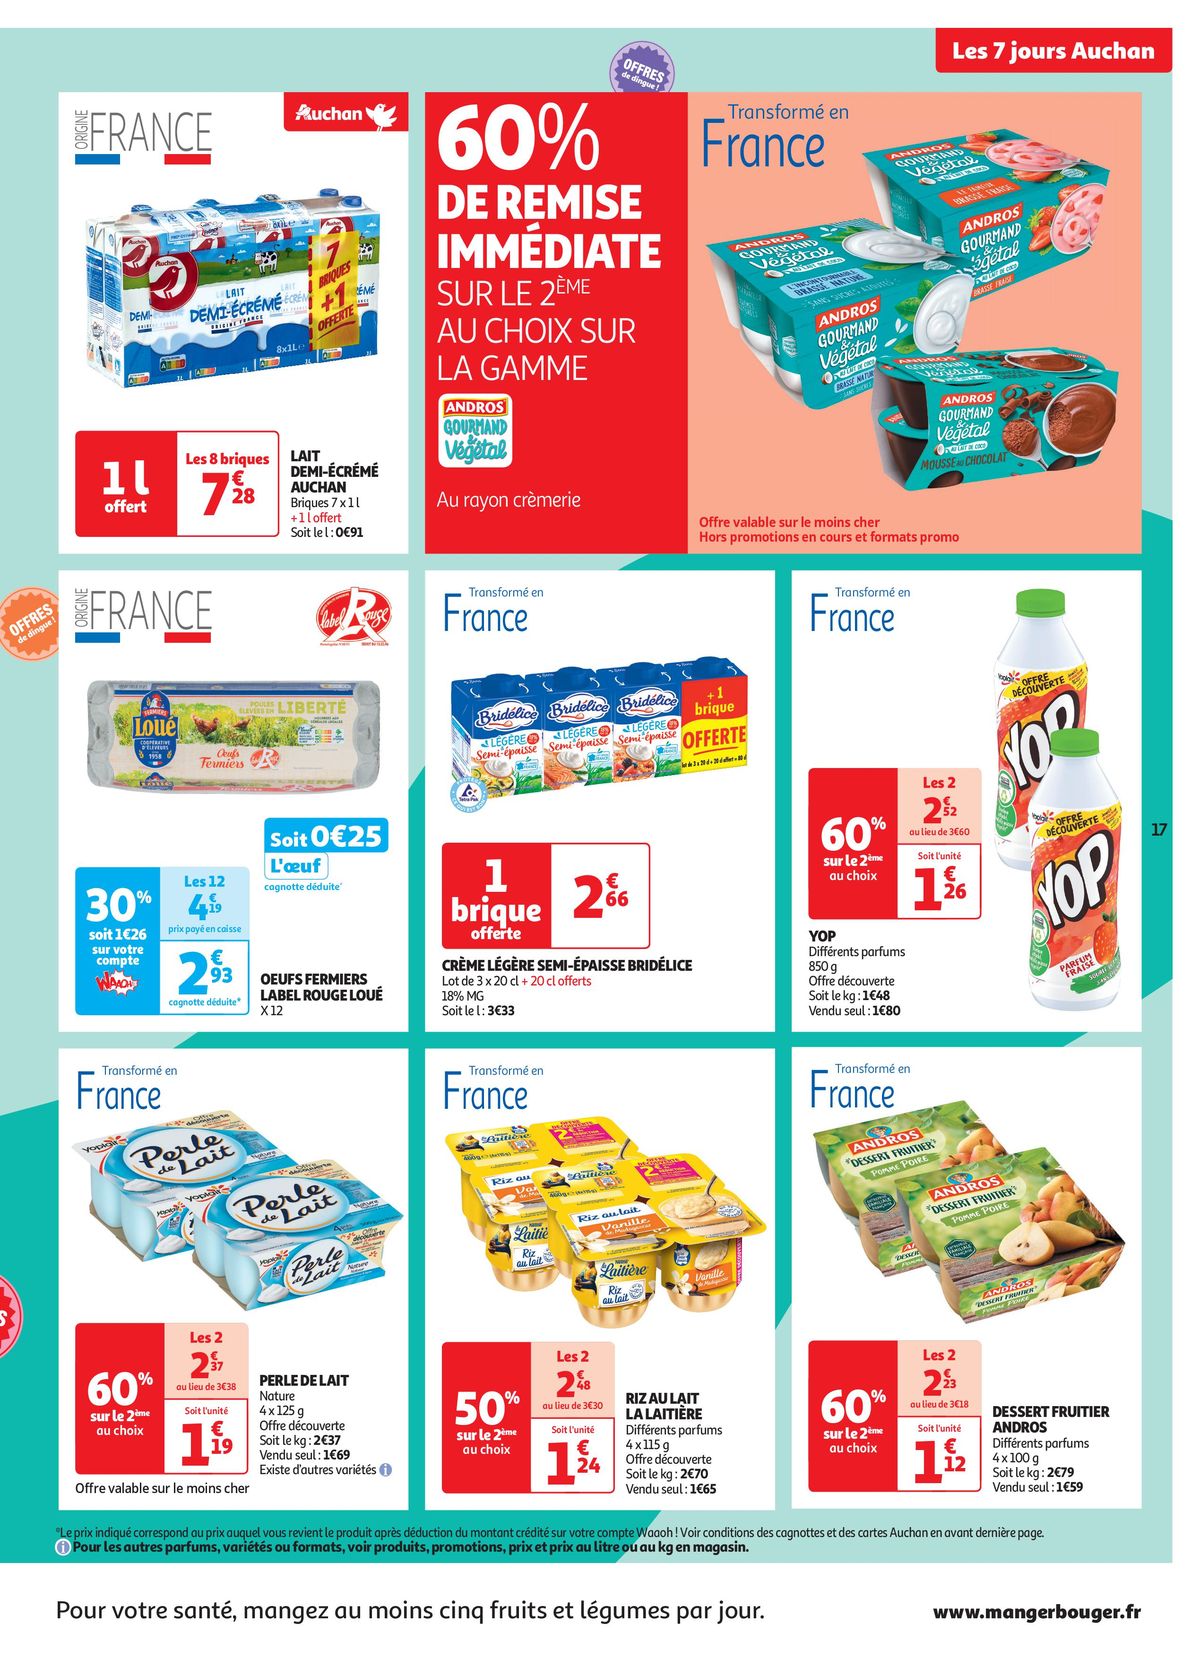 Catalogue C'est les 7 jours Auchan dans votre super !, page 00017